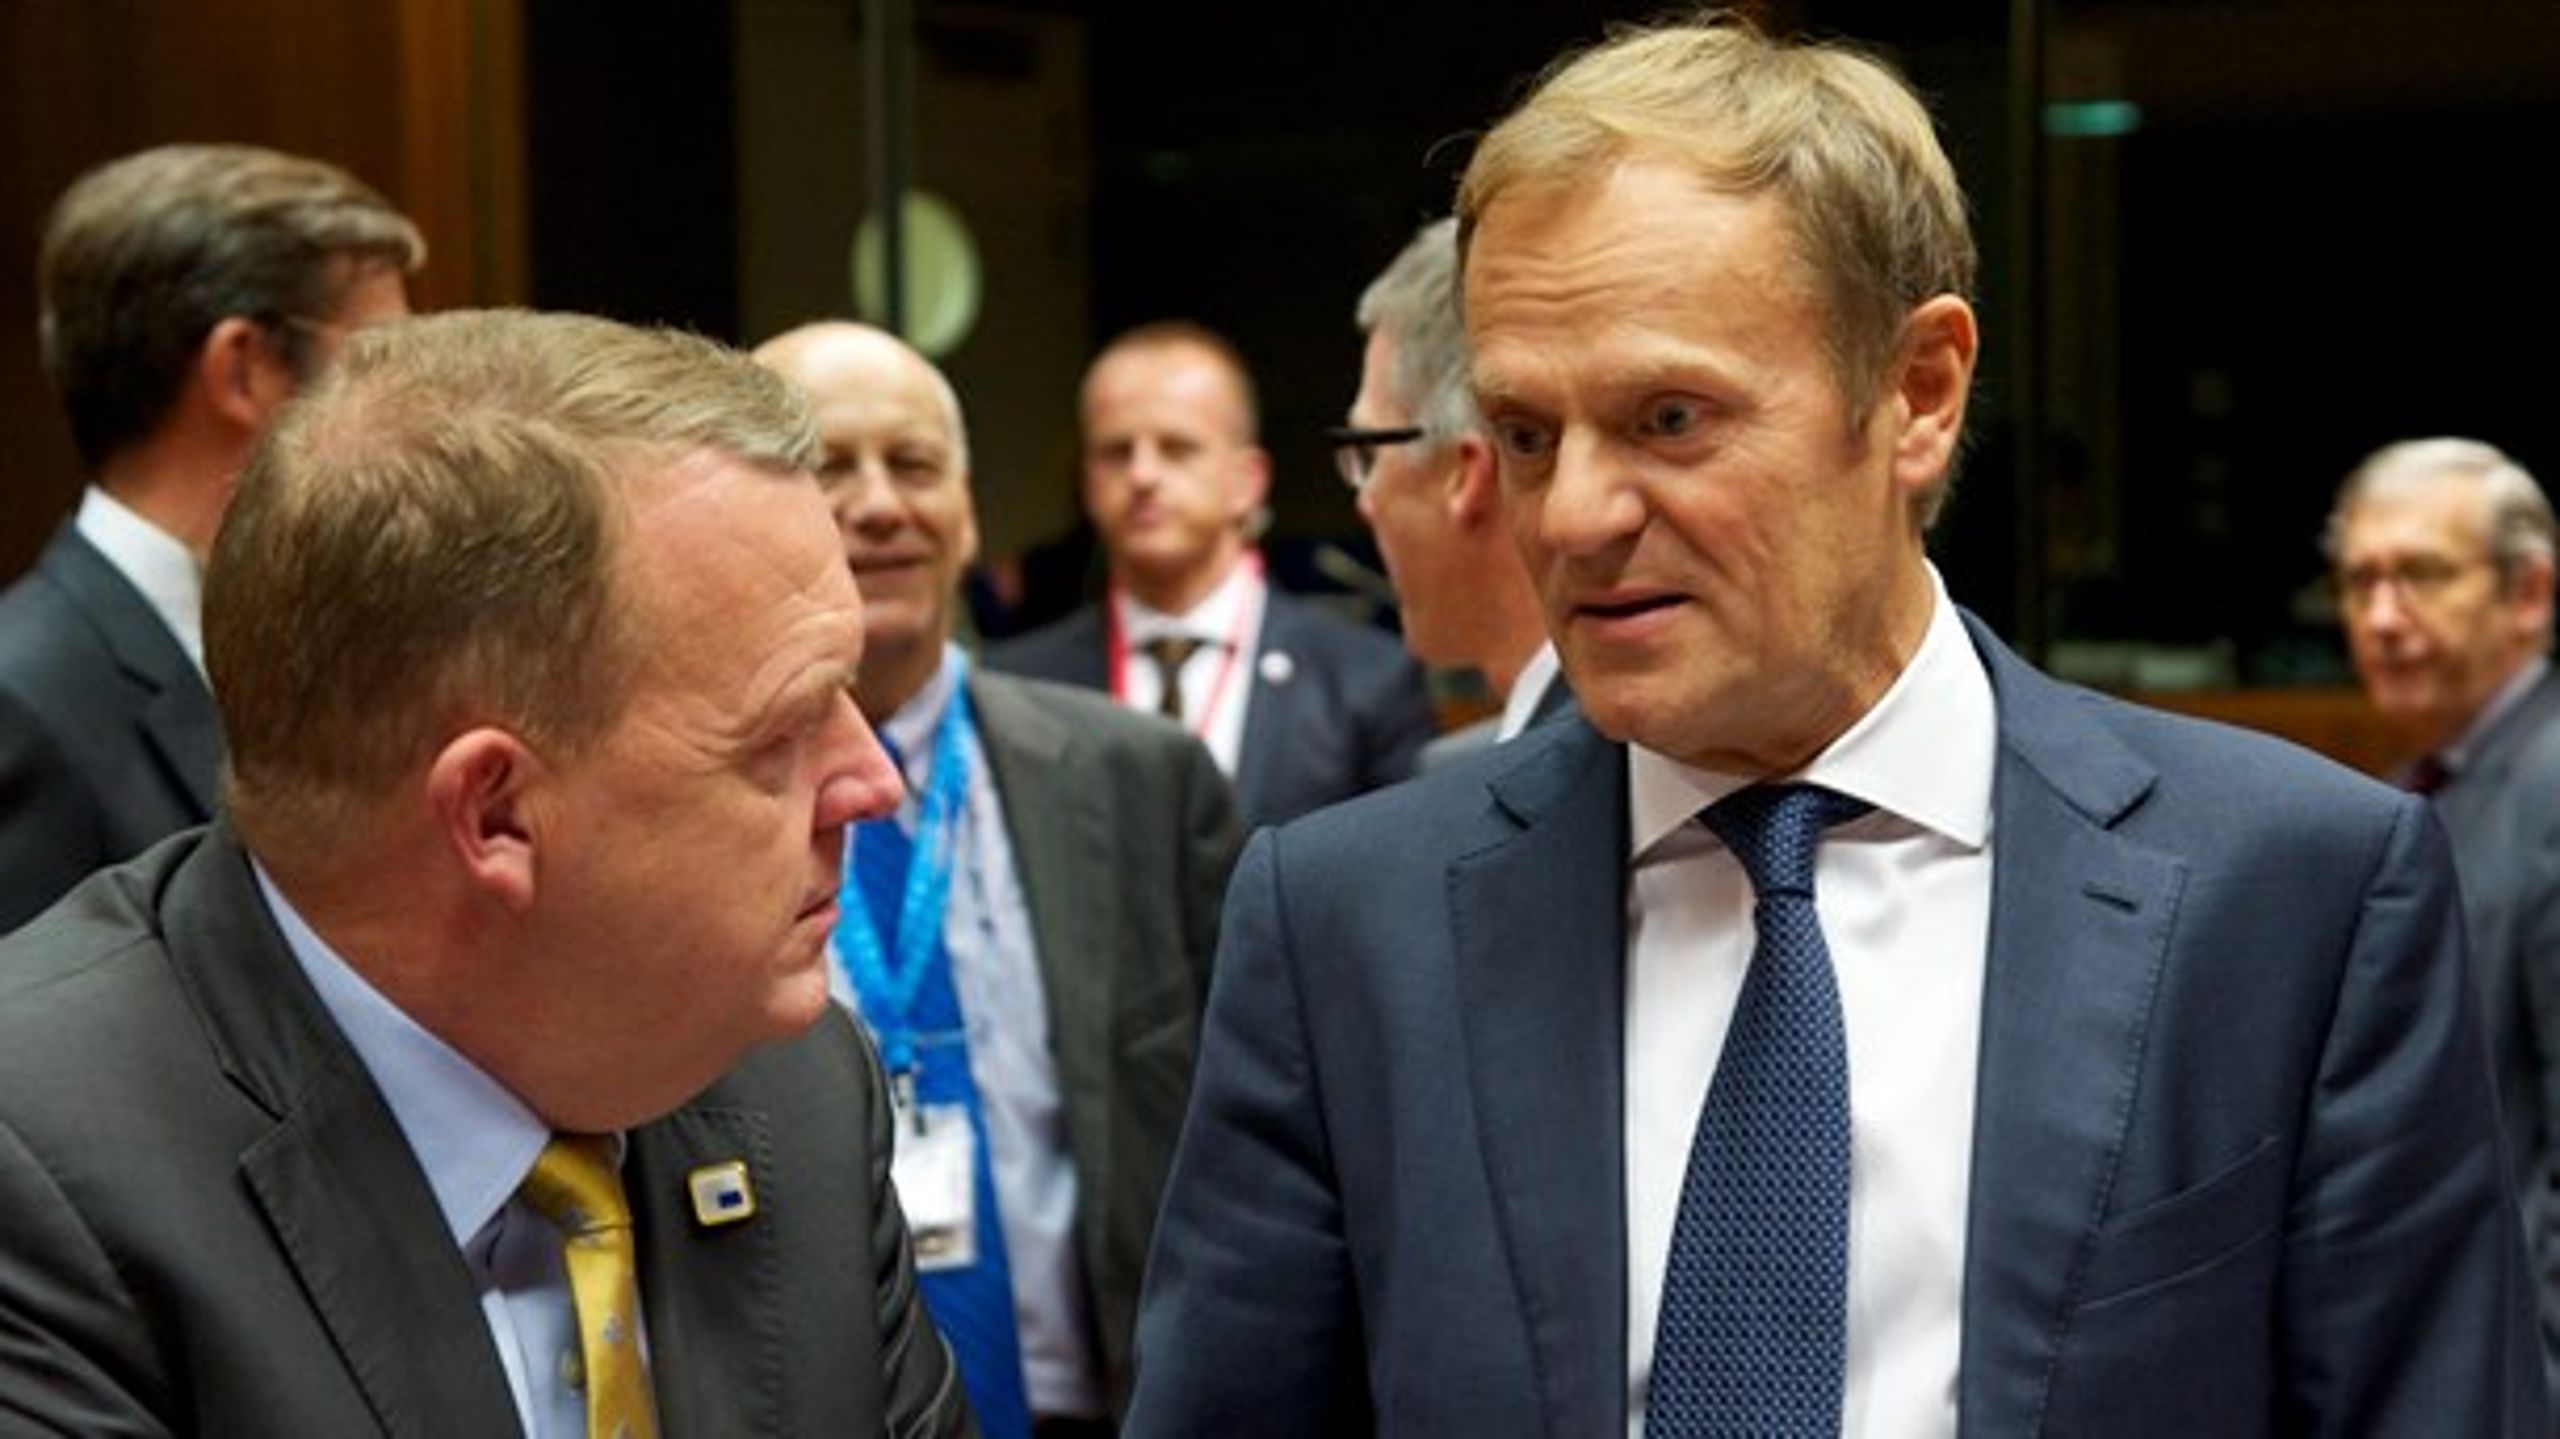 Statsminister Lars Løkke Rasmussen støttede varmt genvalget af formand for Det Europæiske Råd, Donald Tusk.